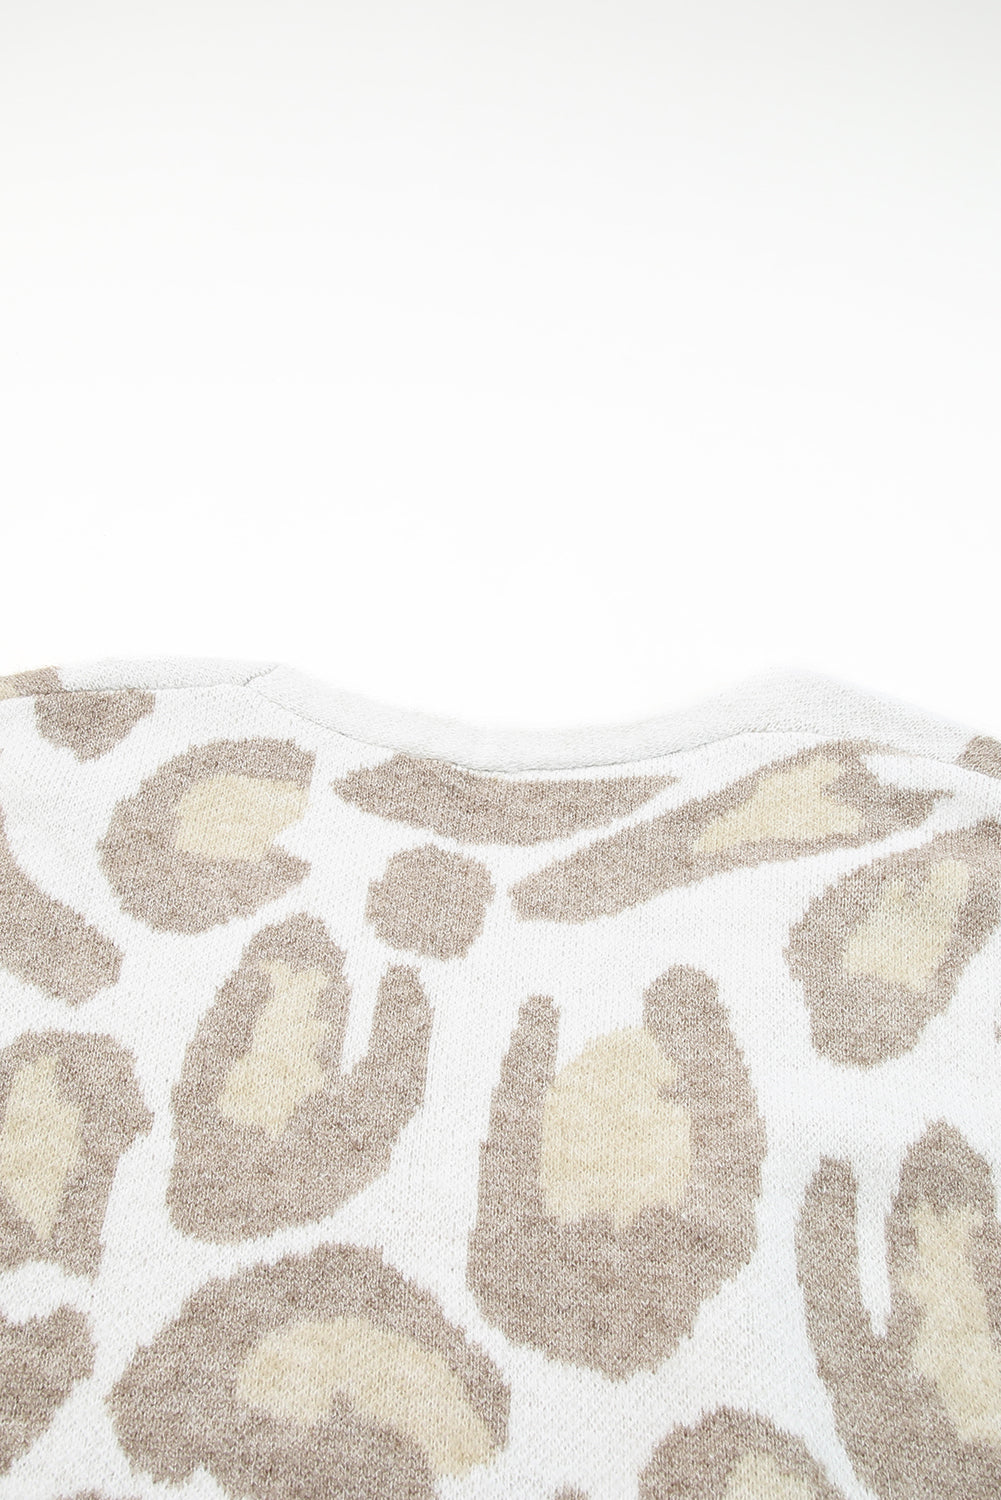 Beige Leopard Pattern Plus Size Long Cardigan